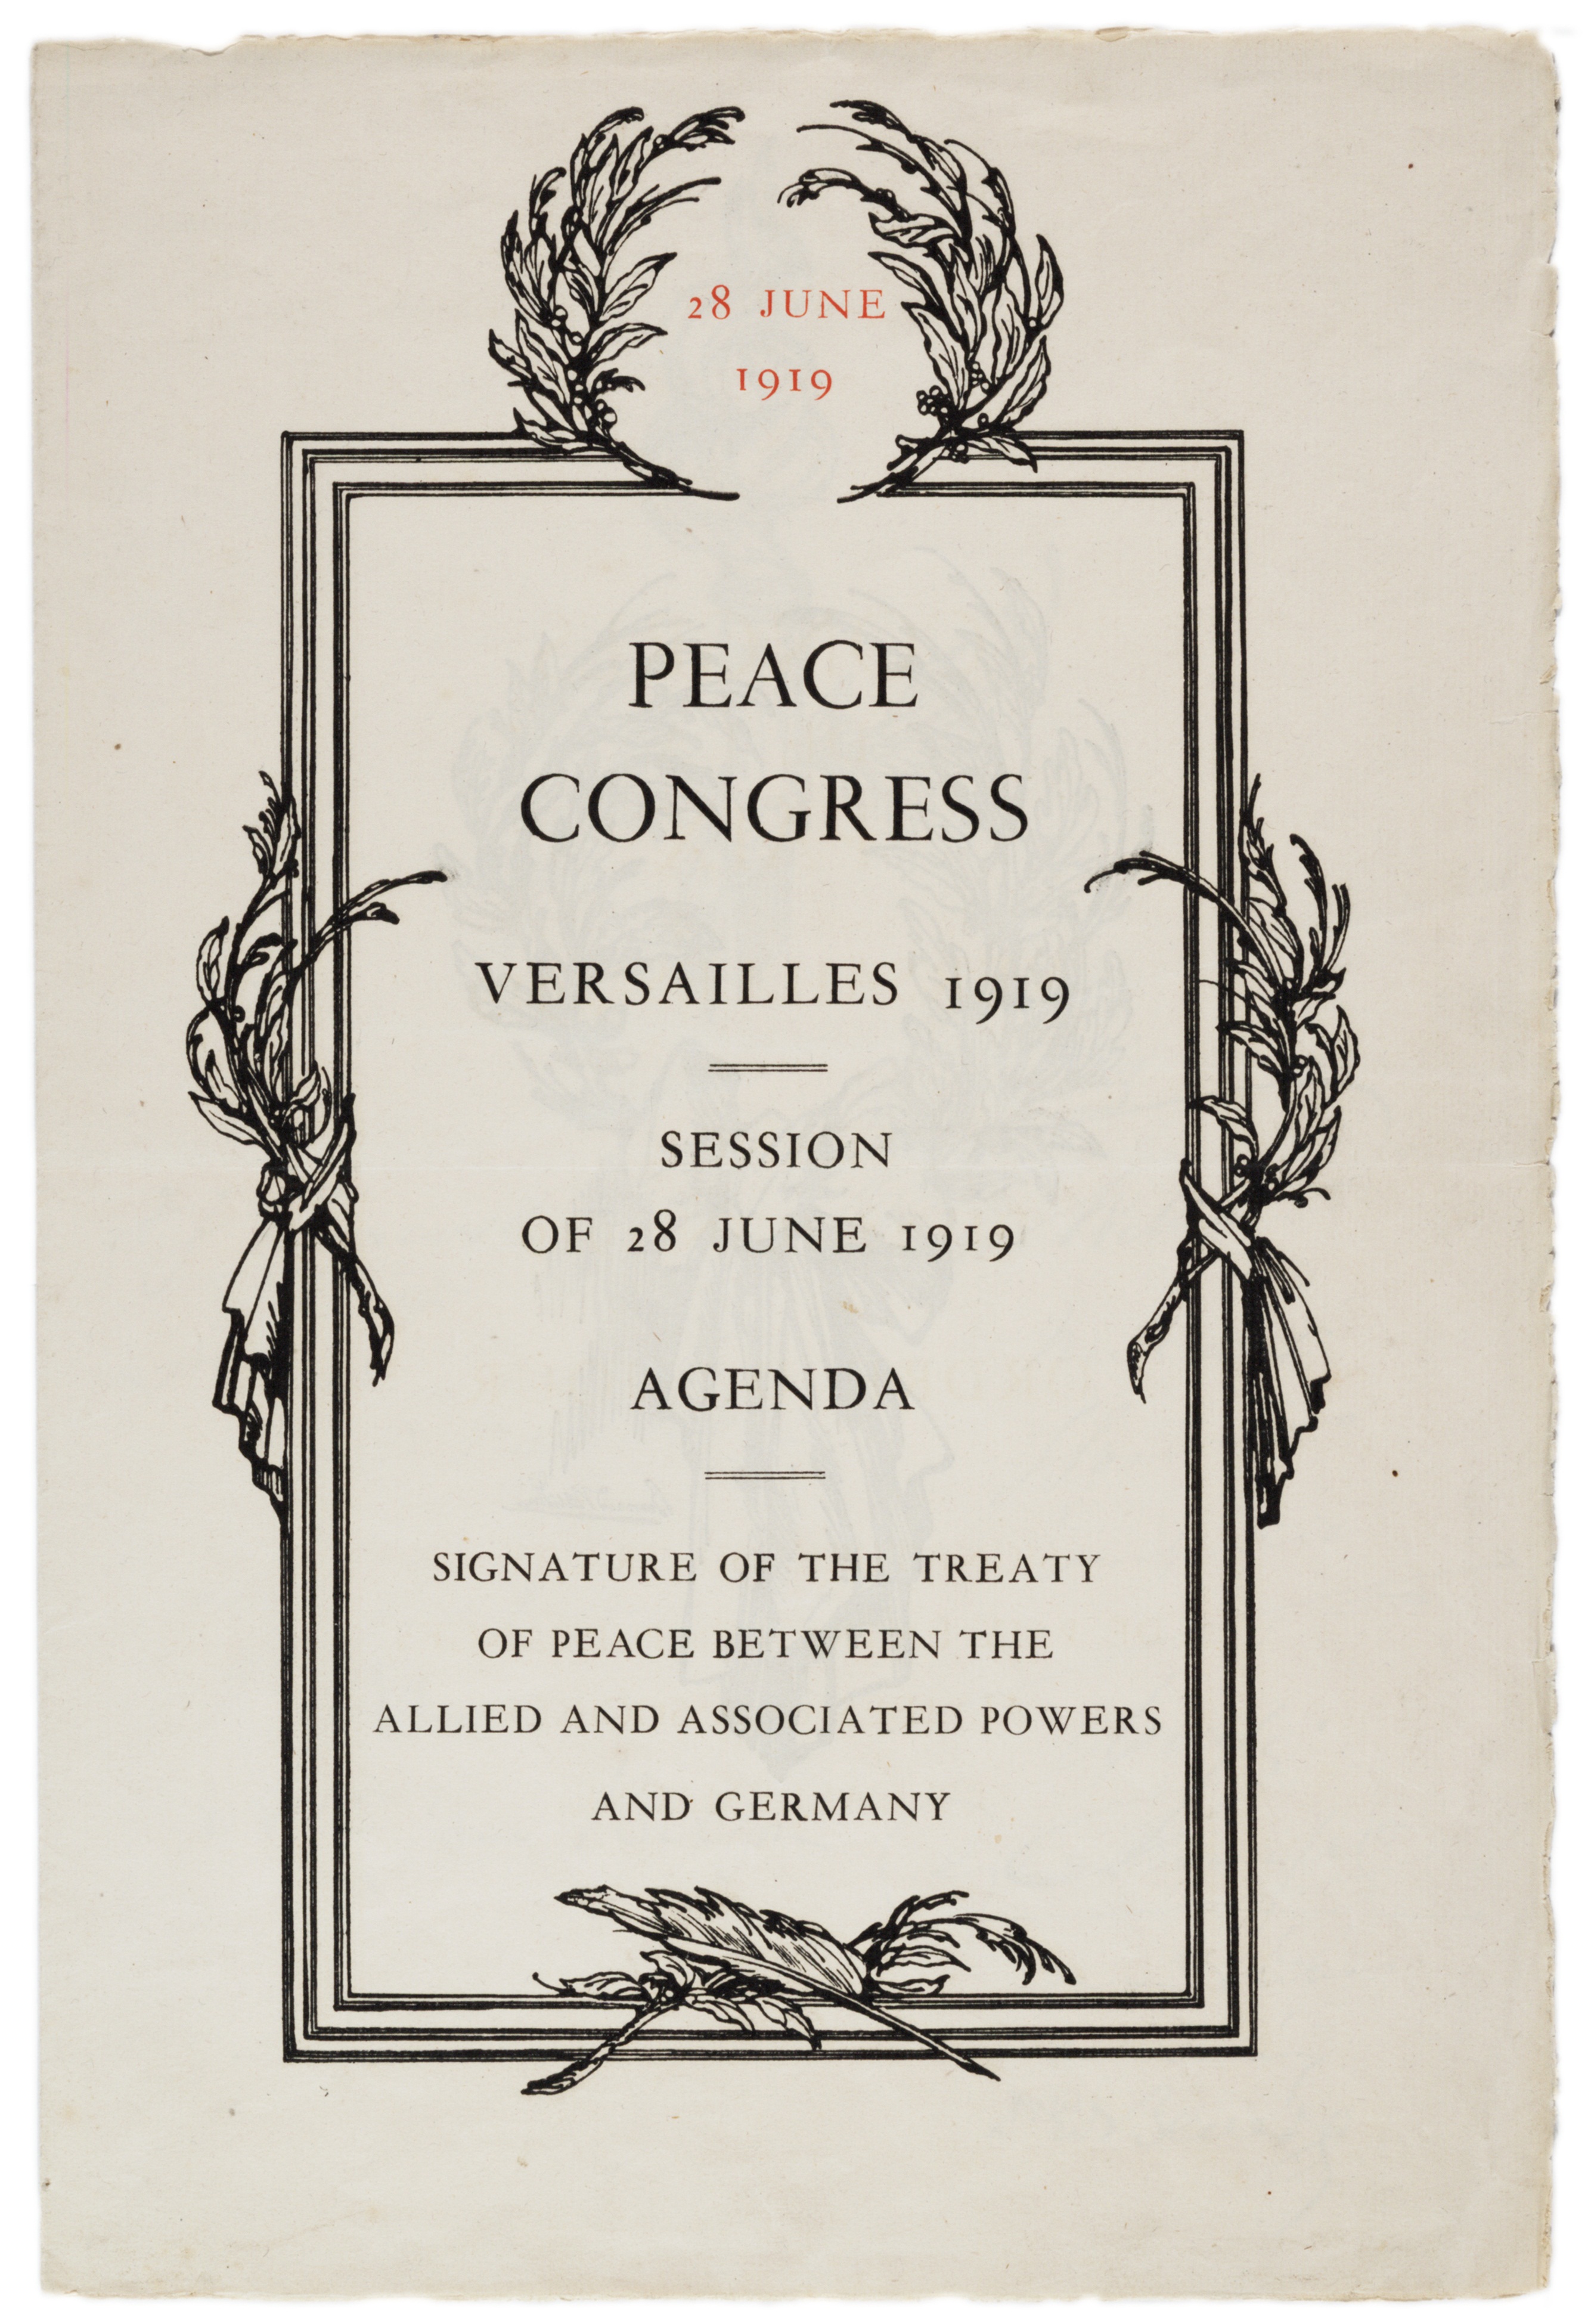 Peace Congress, Versailles 1919, Session of 28 June 1919: Agenda. (Gilder Lehrman Institute, GLC00752)